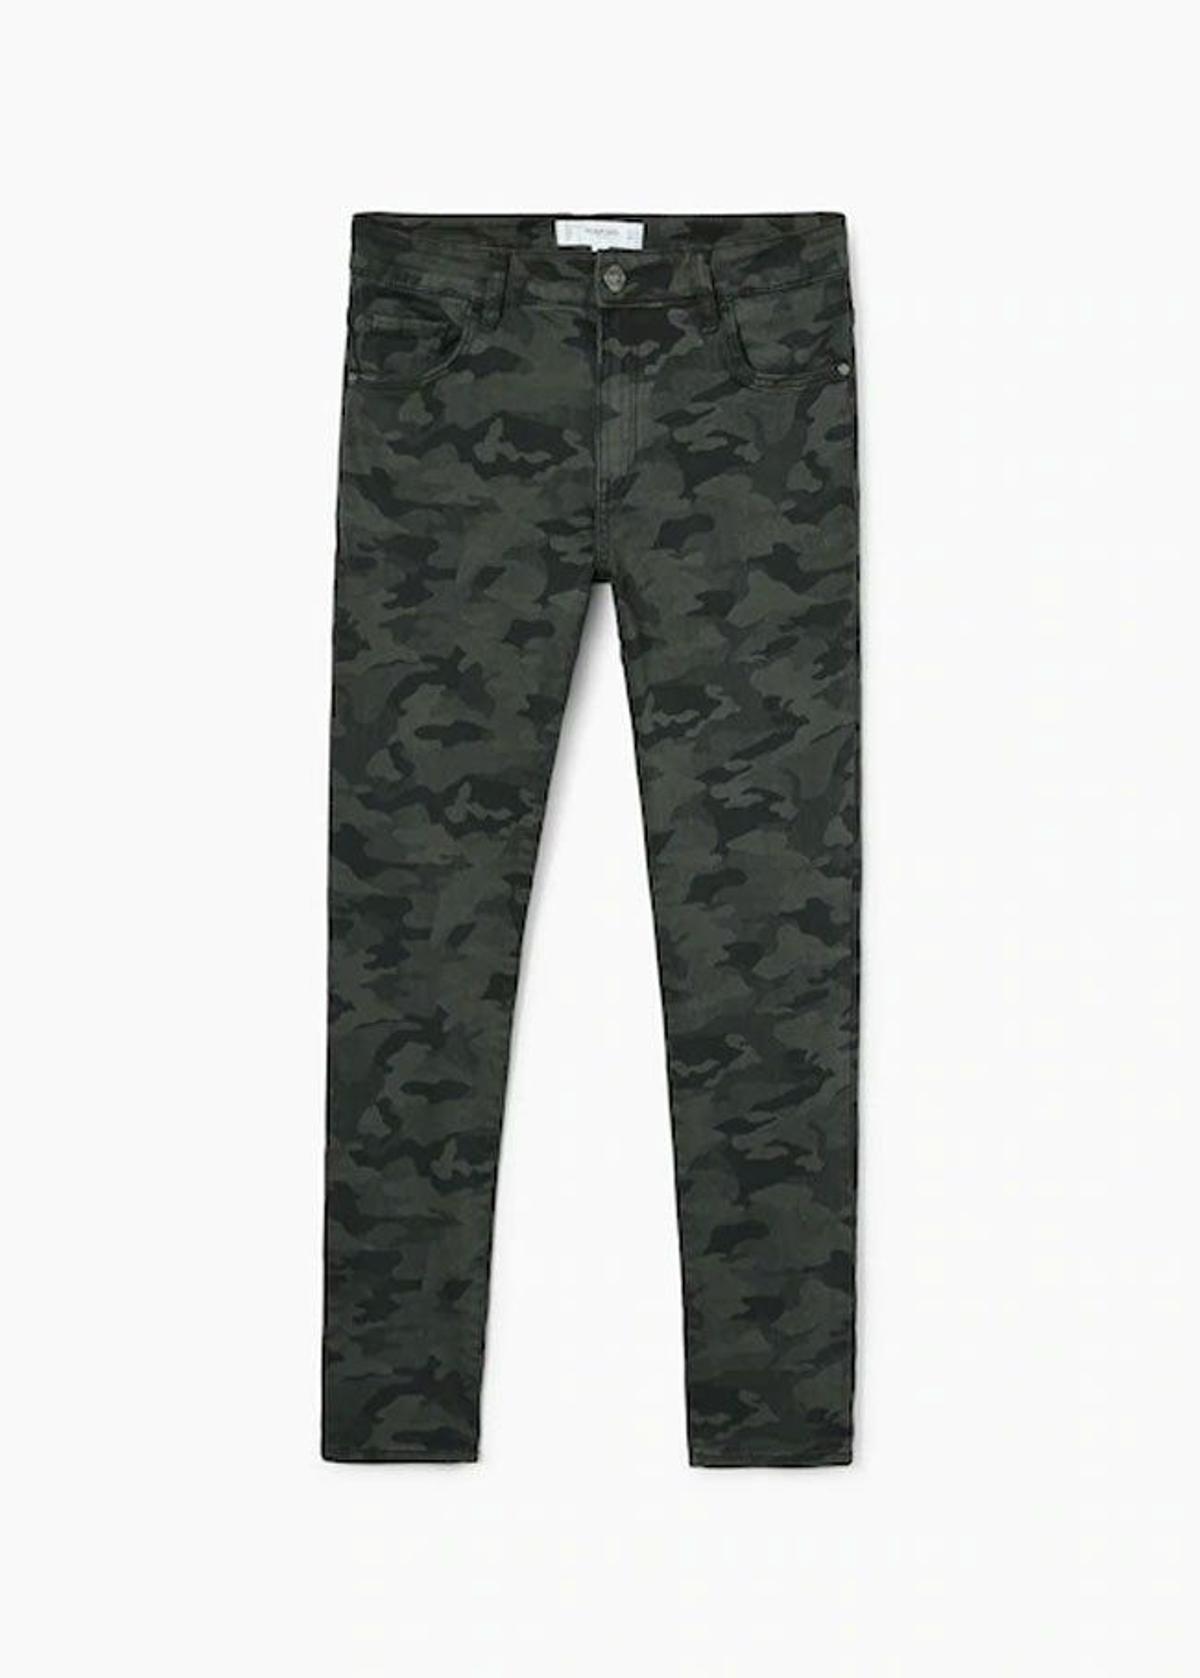 Jeans con estampado militar de Mango. (Precio: 19, 99 euros)